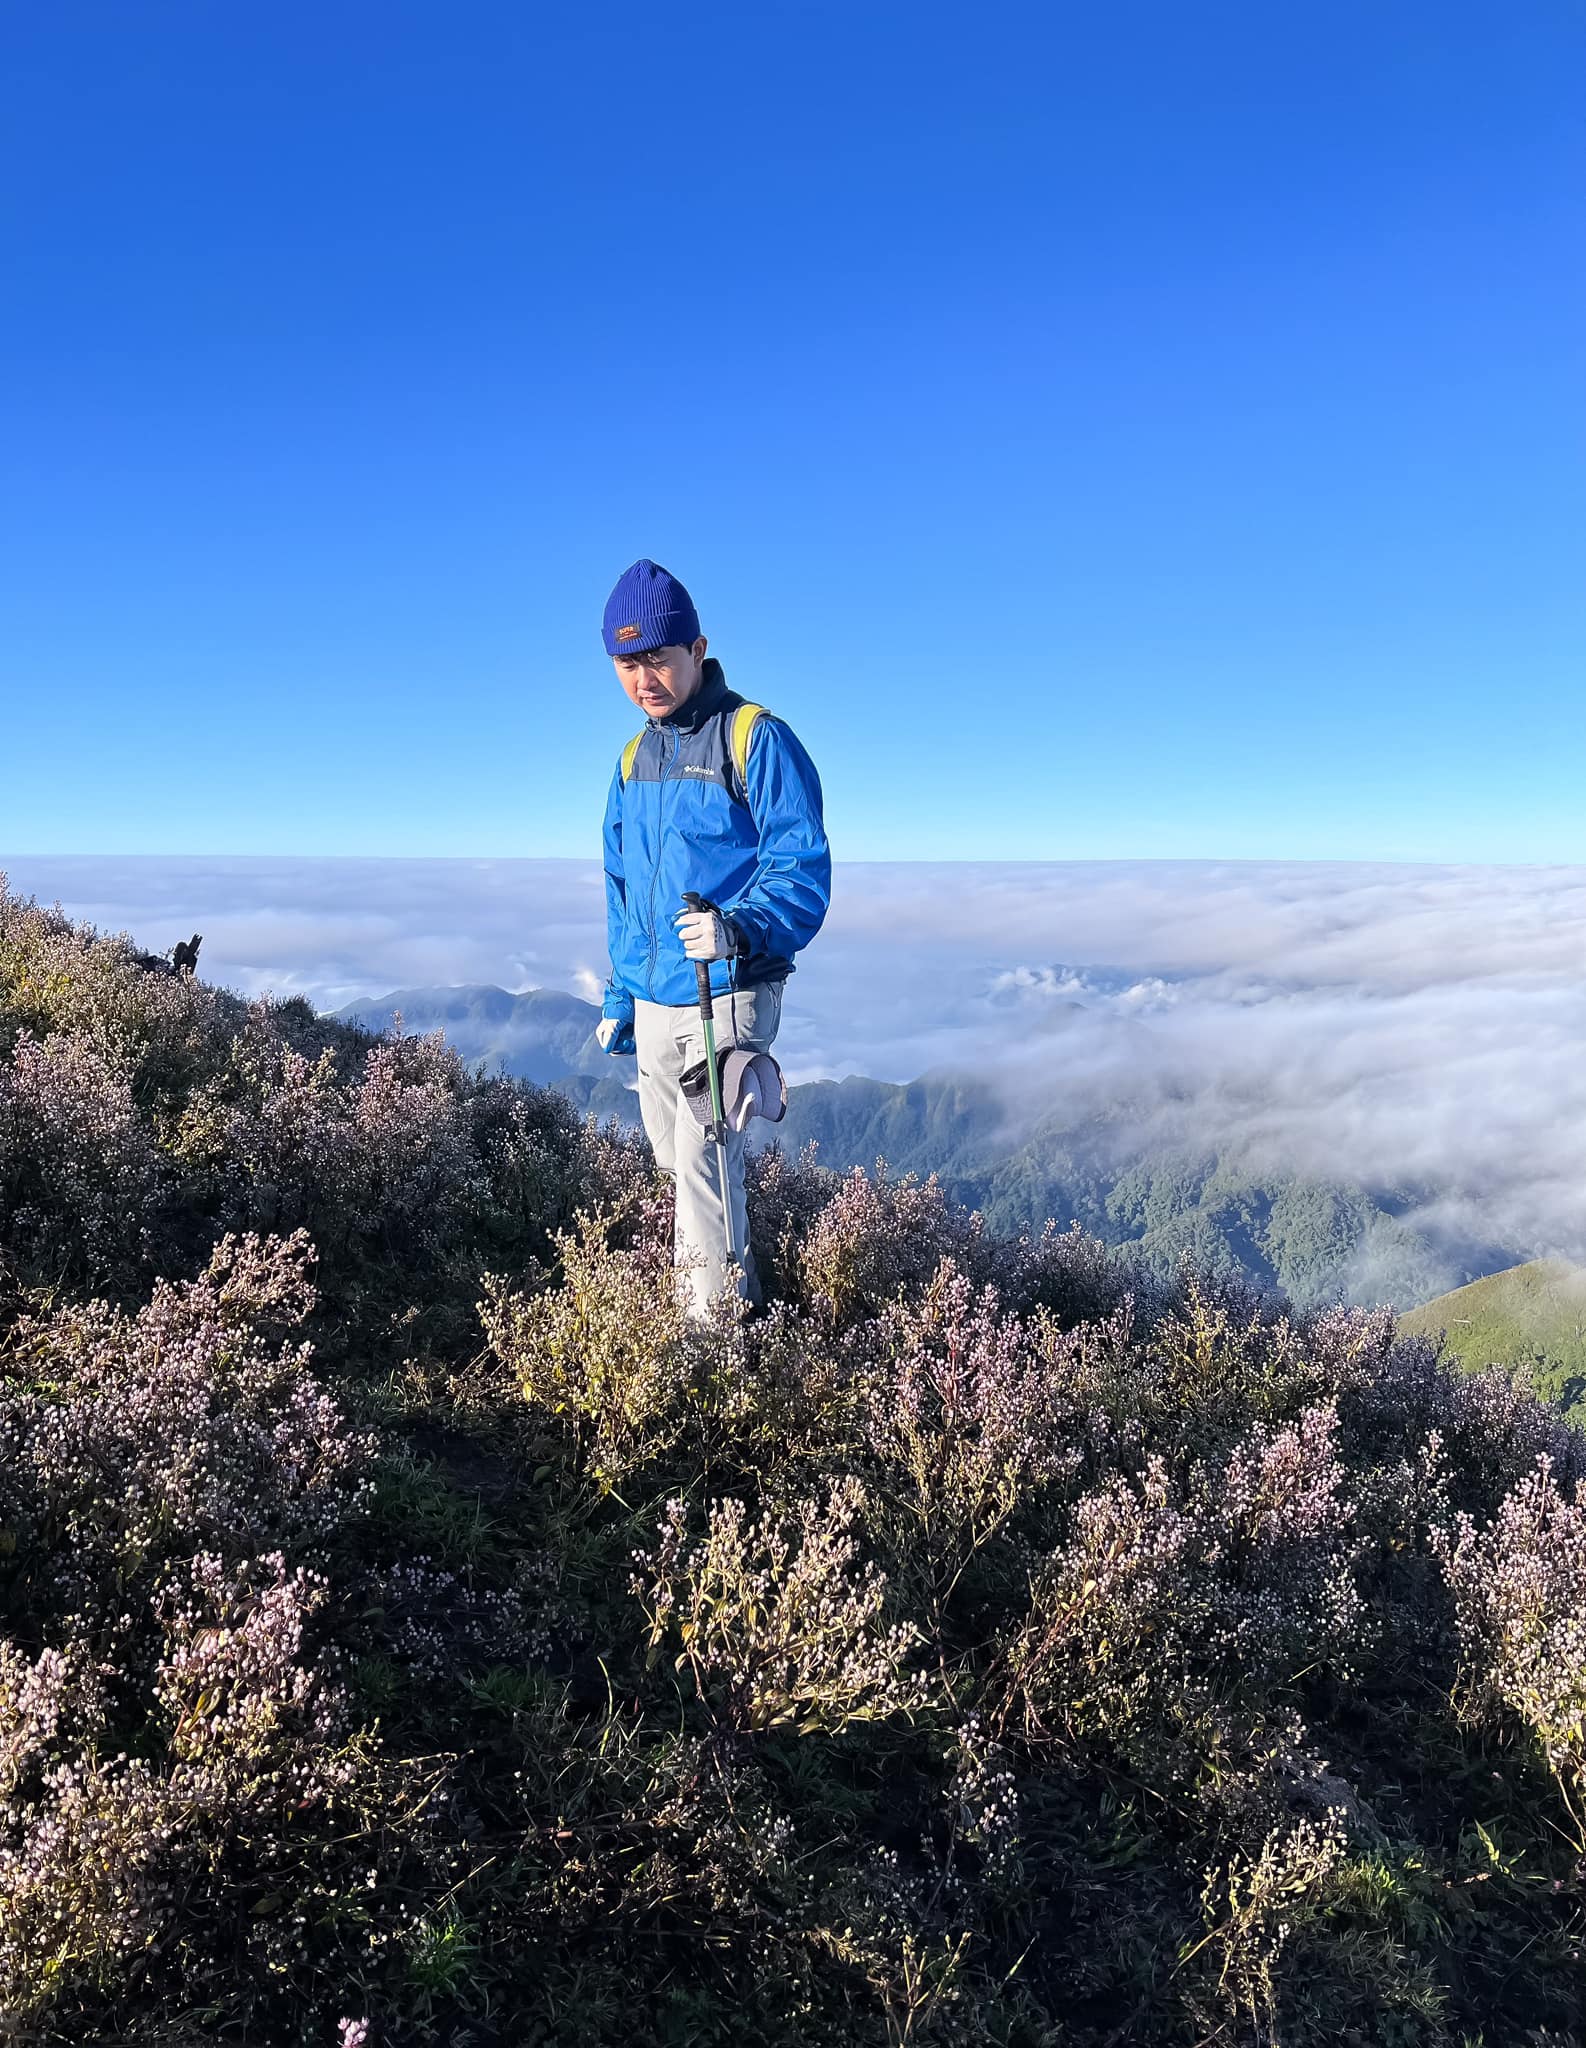 Săn mây vào mùa hoa tím Chi Pâu trên ngọn núi Tà Chì Nhù – Yên Bái 2